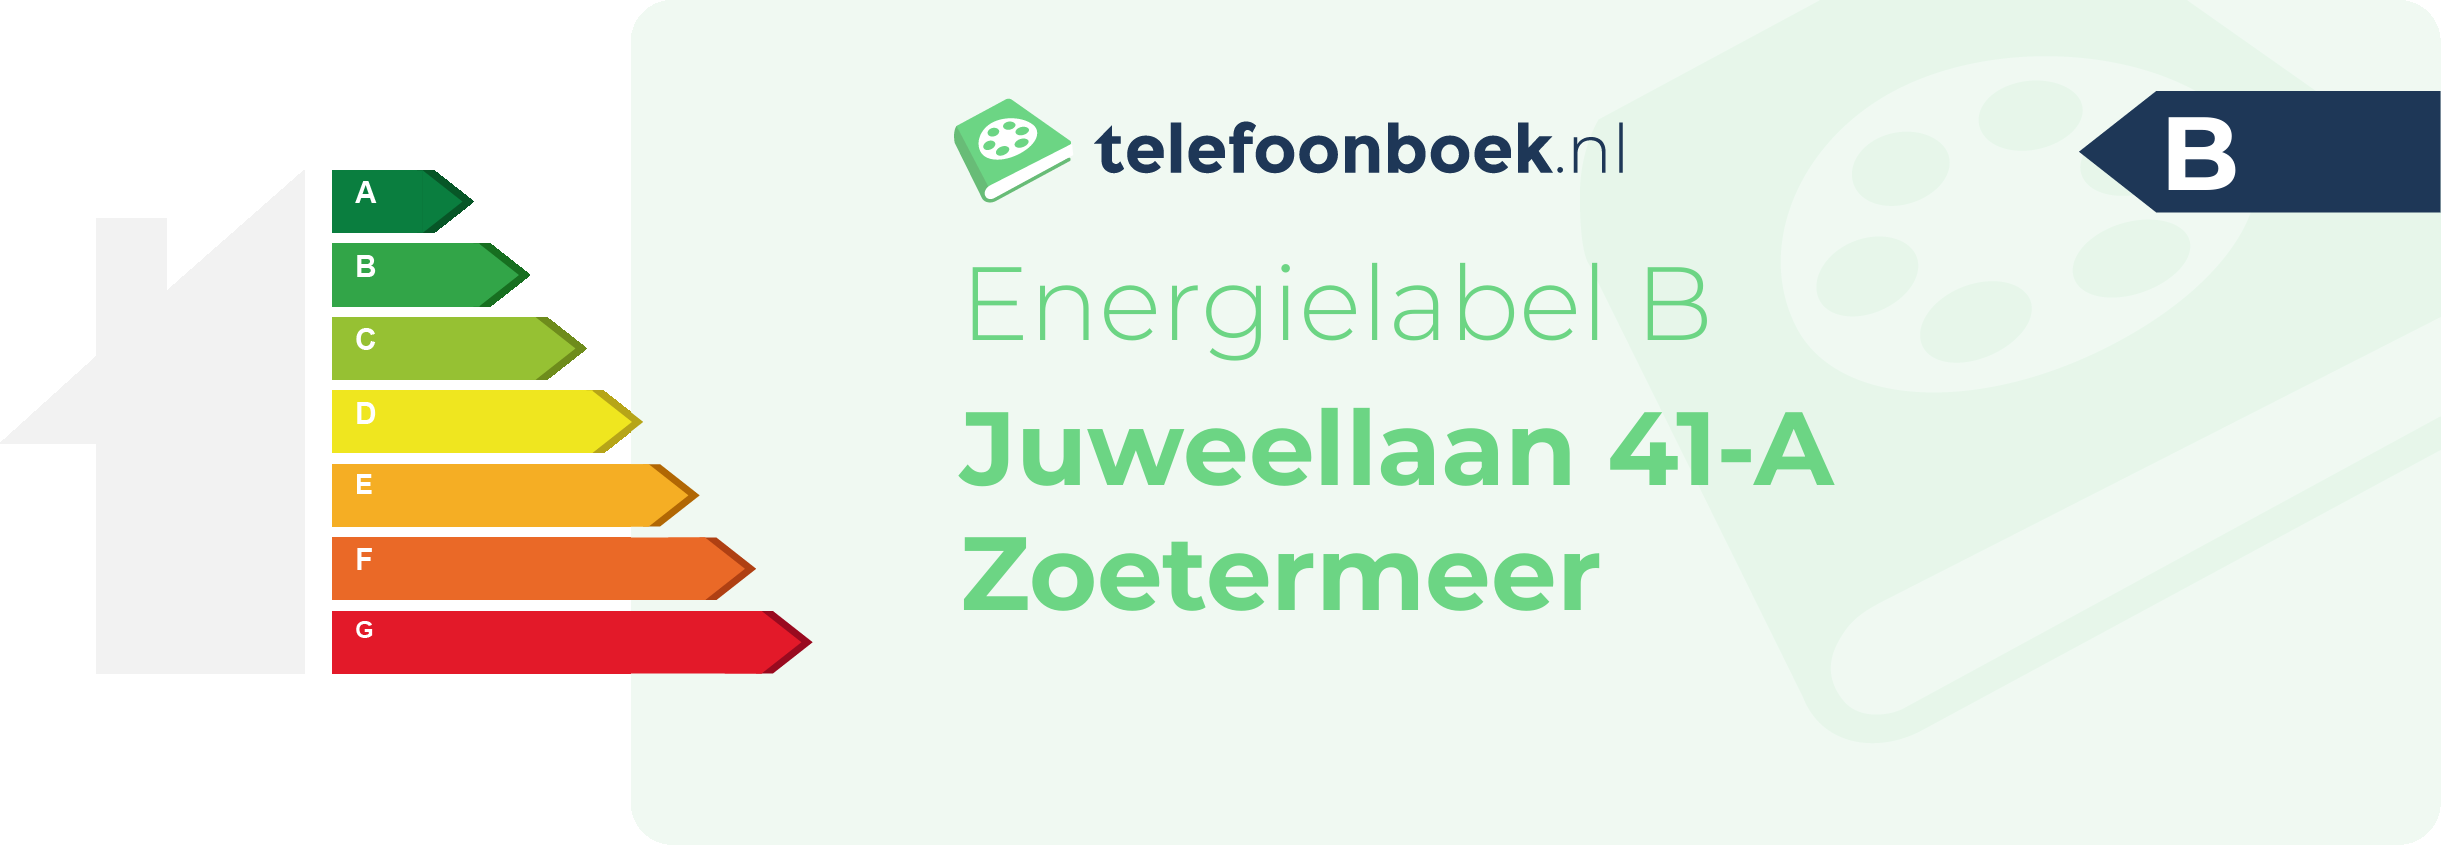 Energielabel Juweellaan 41-A Zoetermeer